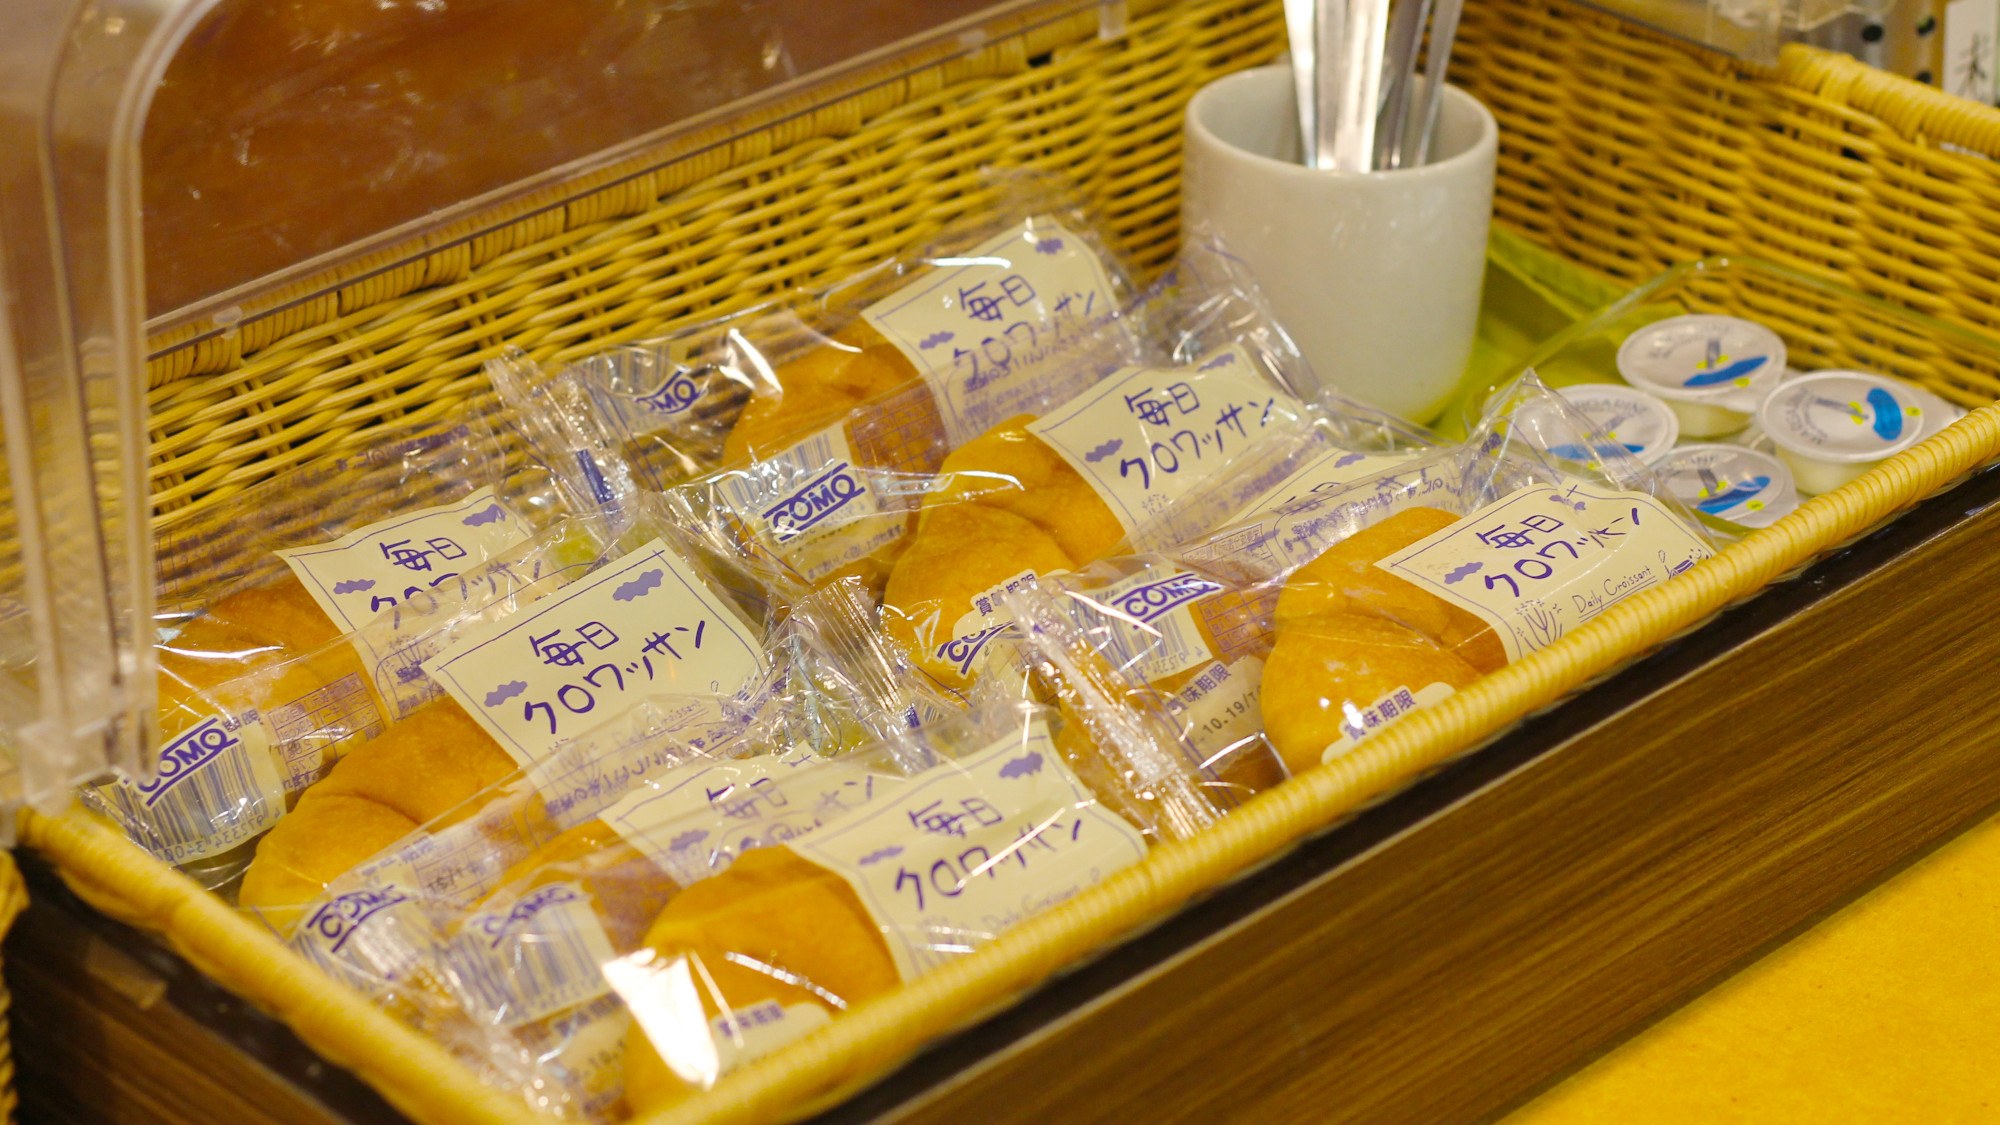 【朝食】パンはお代わり自由(内容は仕入の状況により変更となります)。